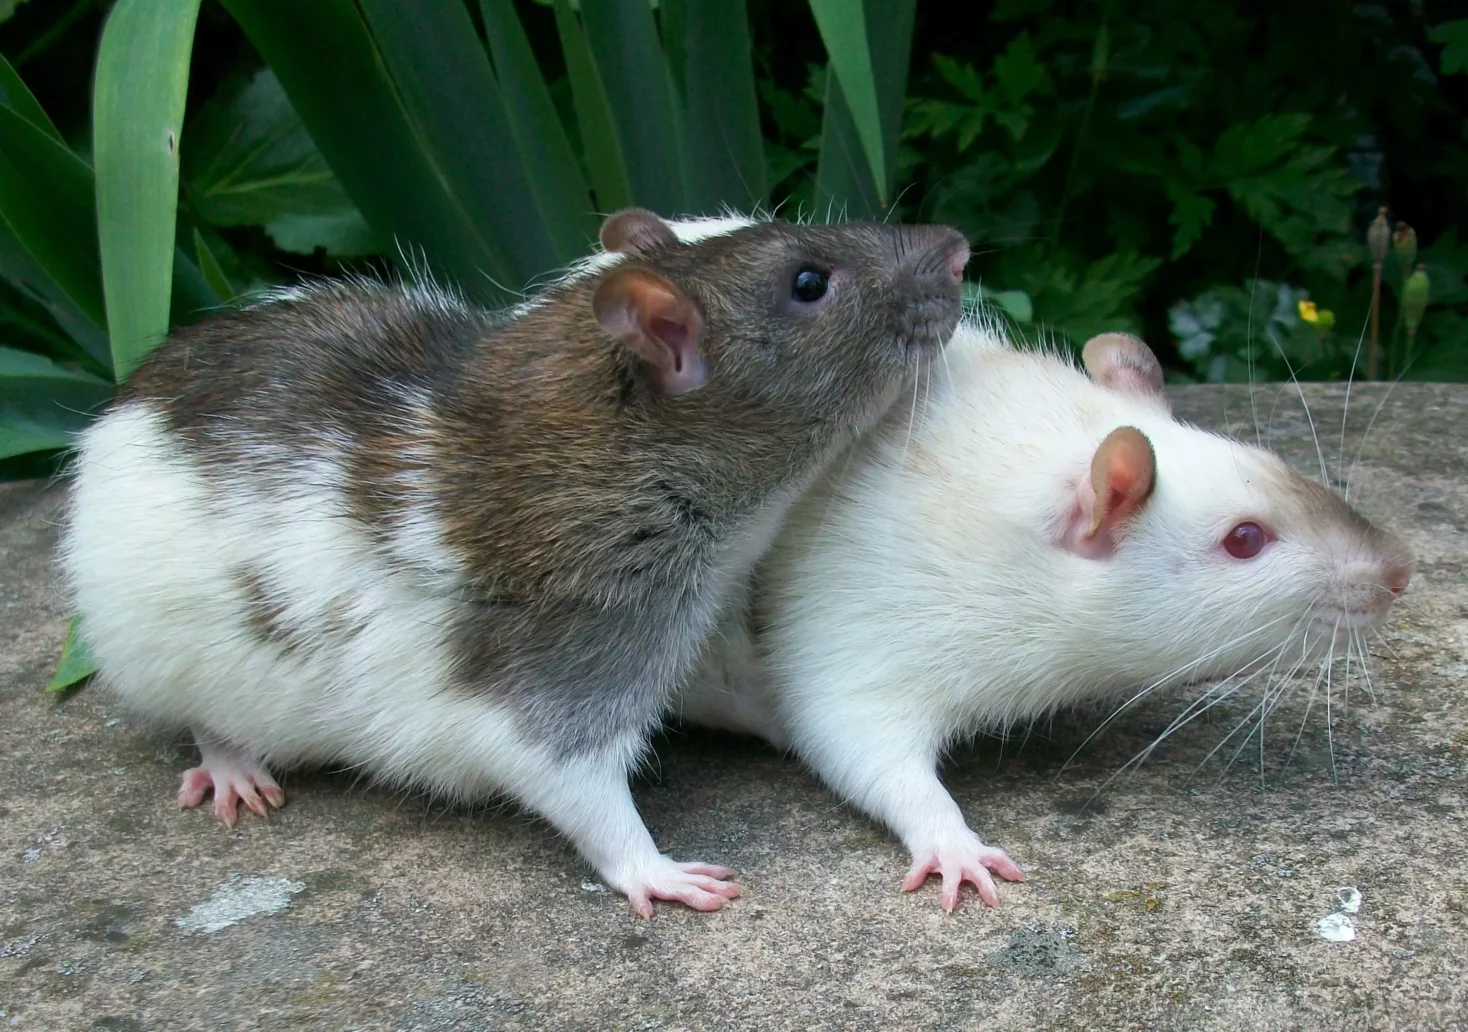 Gifteinsatz gegen Ratten: „Strategie ist ineffektiv“